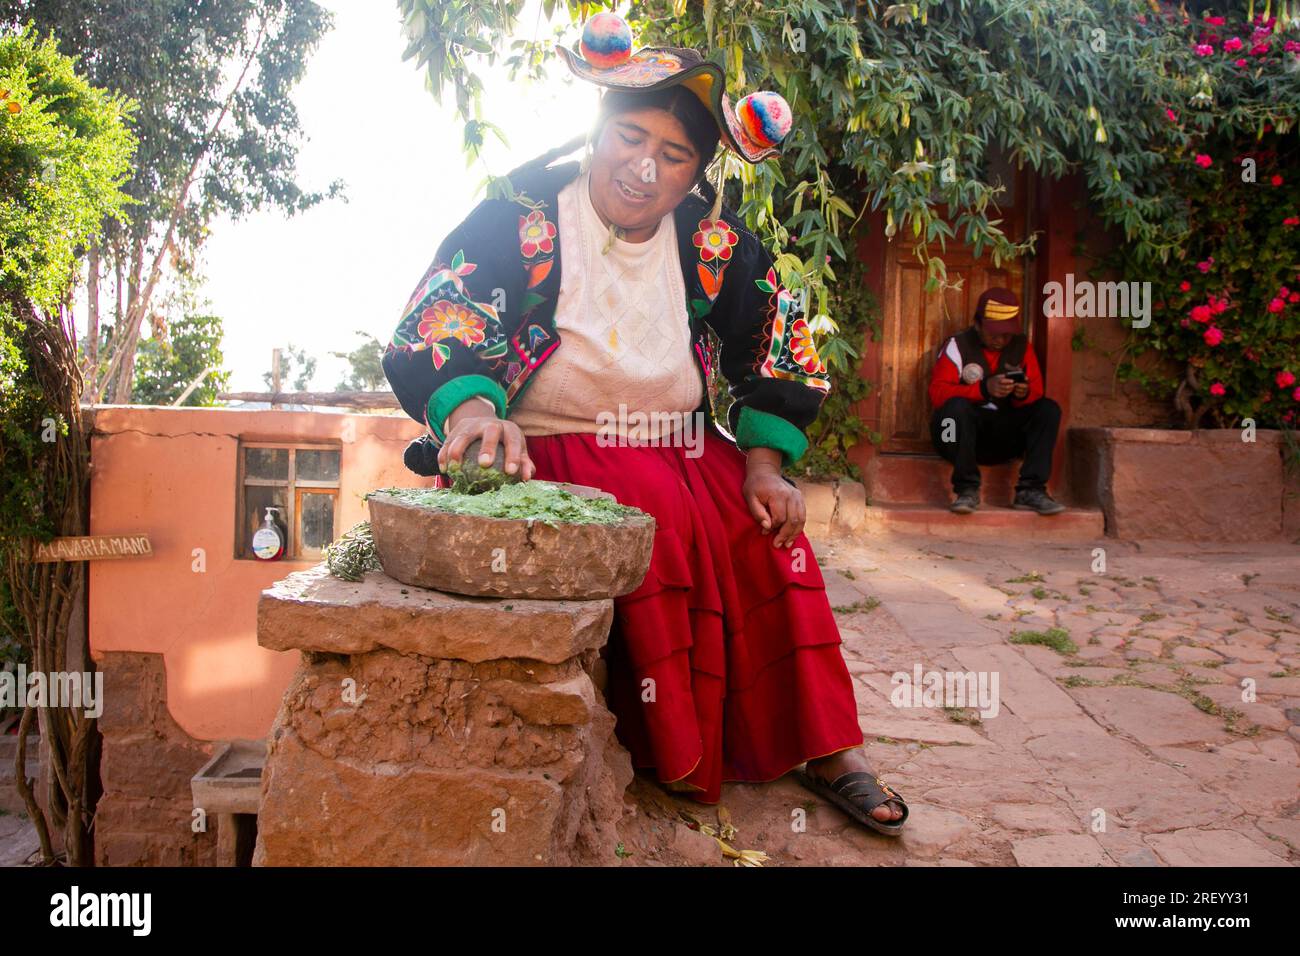 Llachon, Perù; 1 gennaio 2023: Donna che prepara shampoo vegetale biologico naturale nella regione di Llachon sul lago Titicaca in Perù. Foto Stock